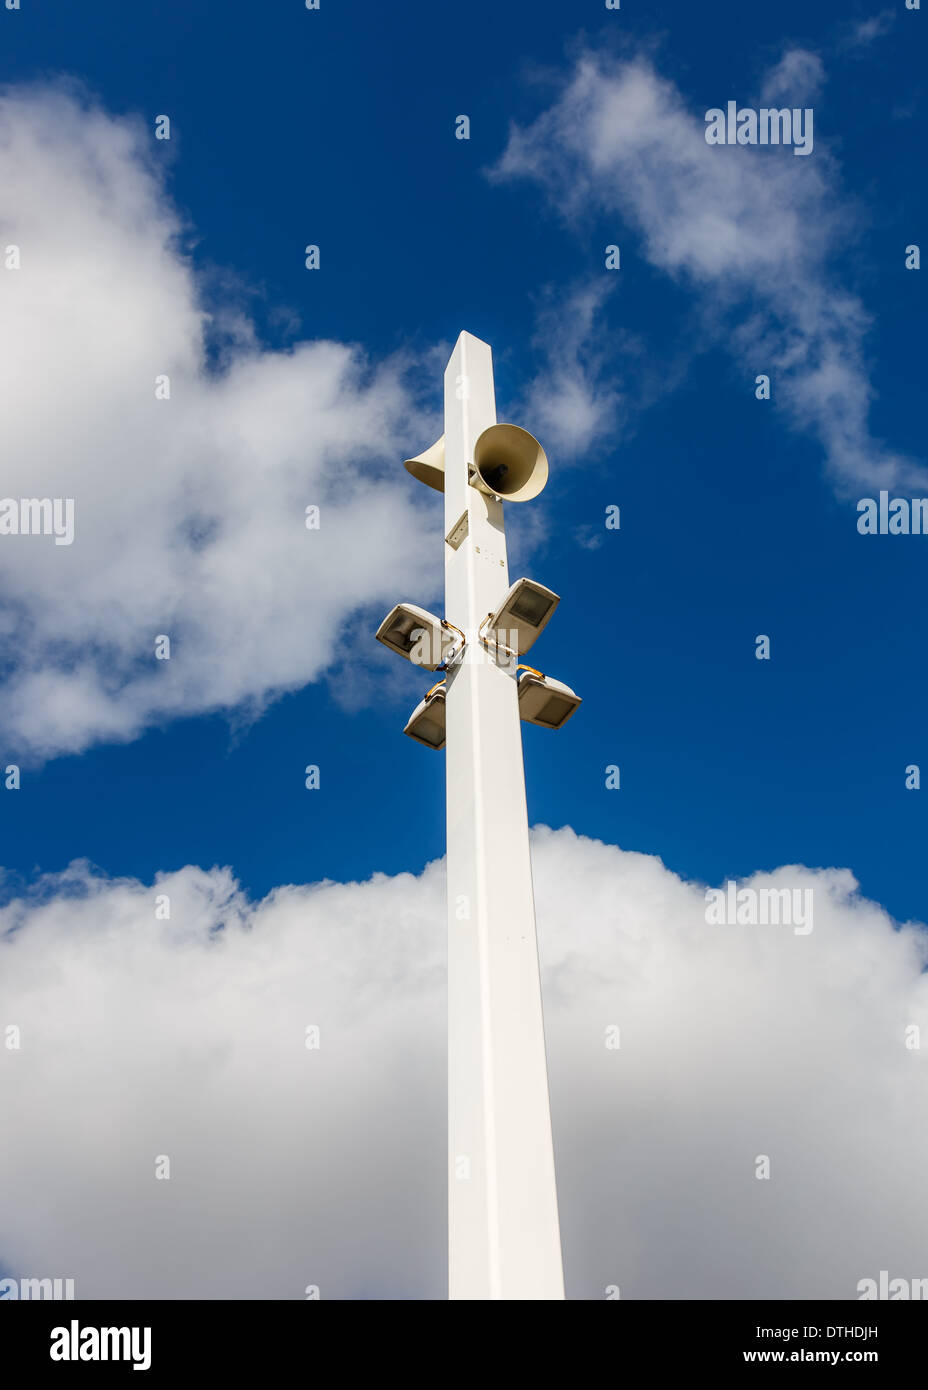 Haut-parleurs de sonorisation extérieure contre un ciel bleu Banque D'Images